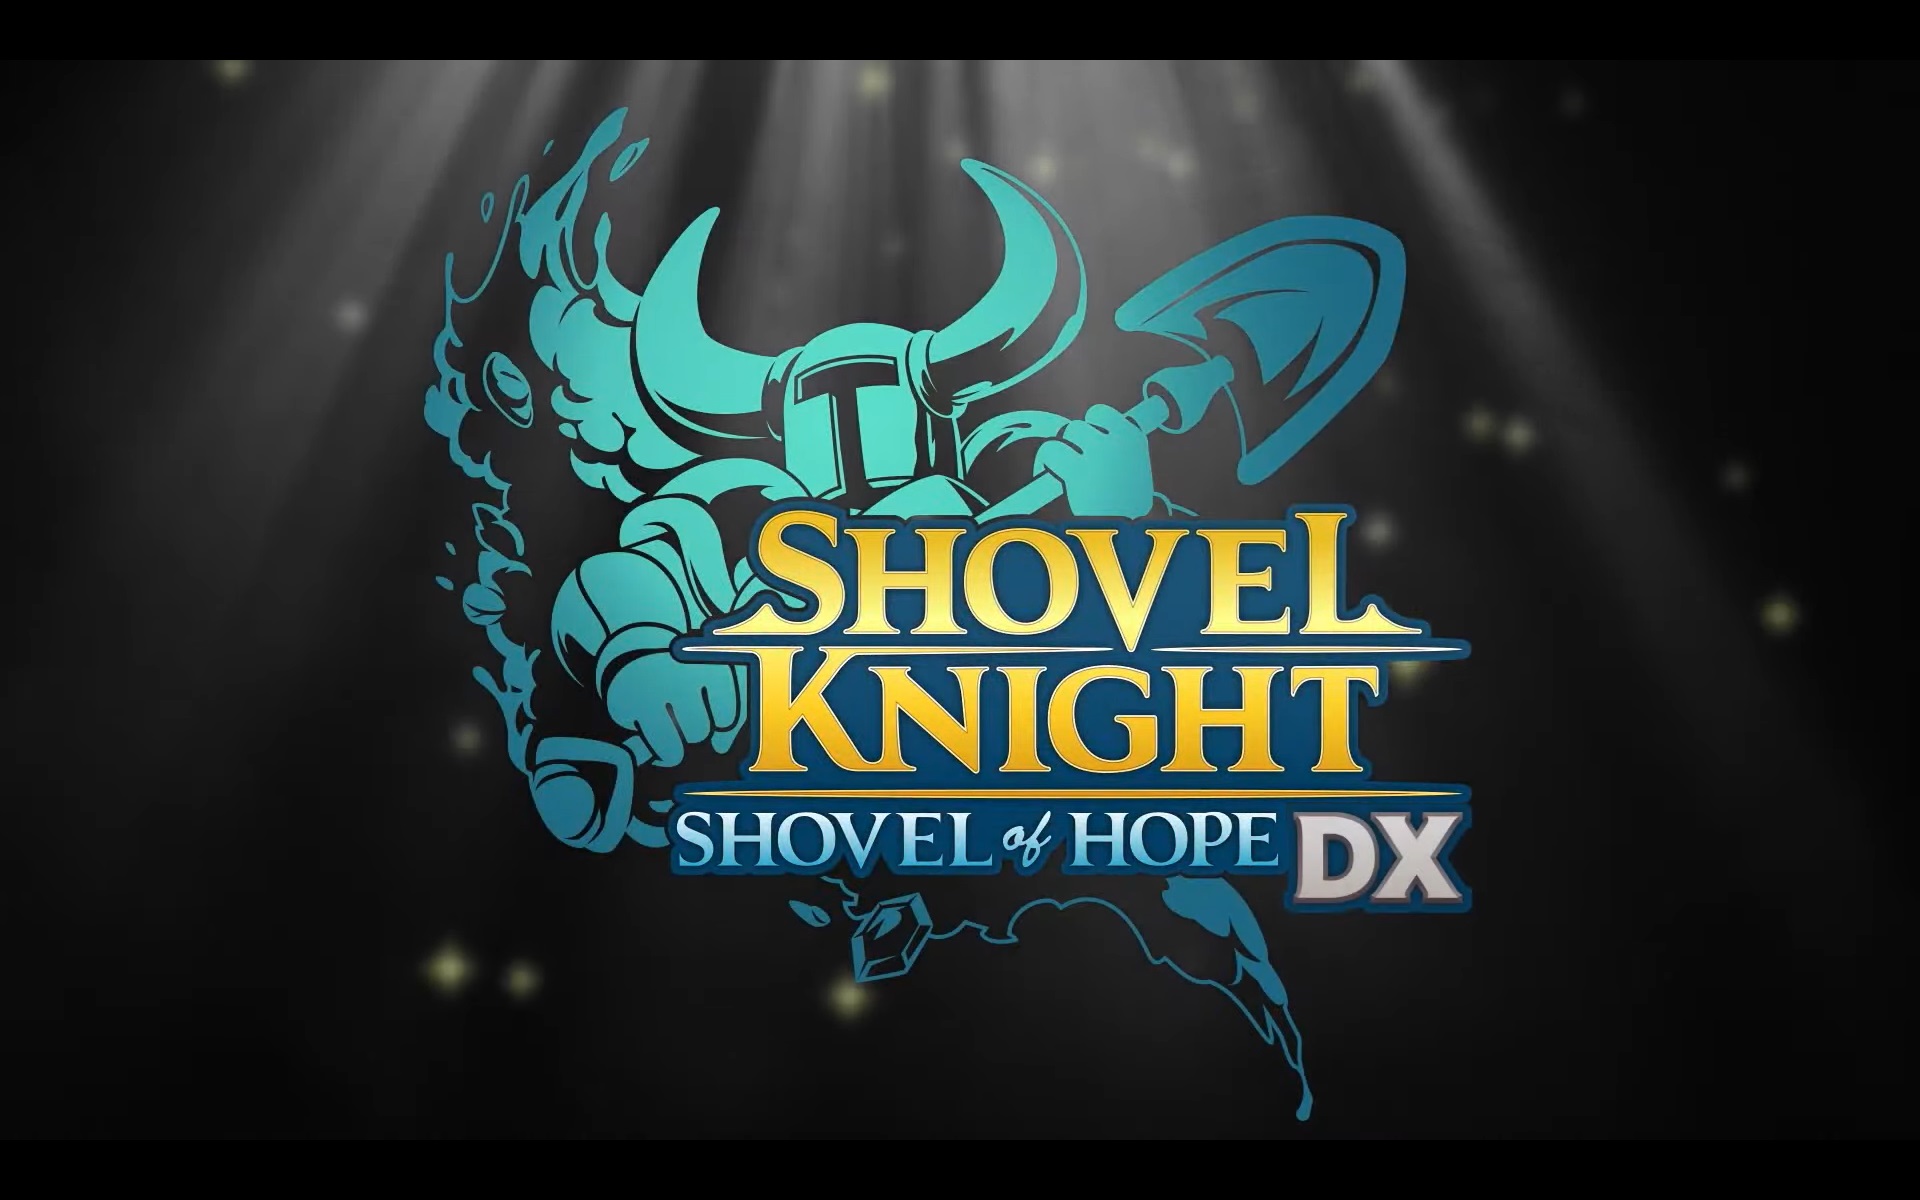 Shovel Knight: Shovel of Hope DX